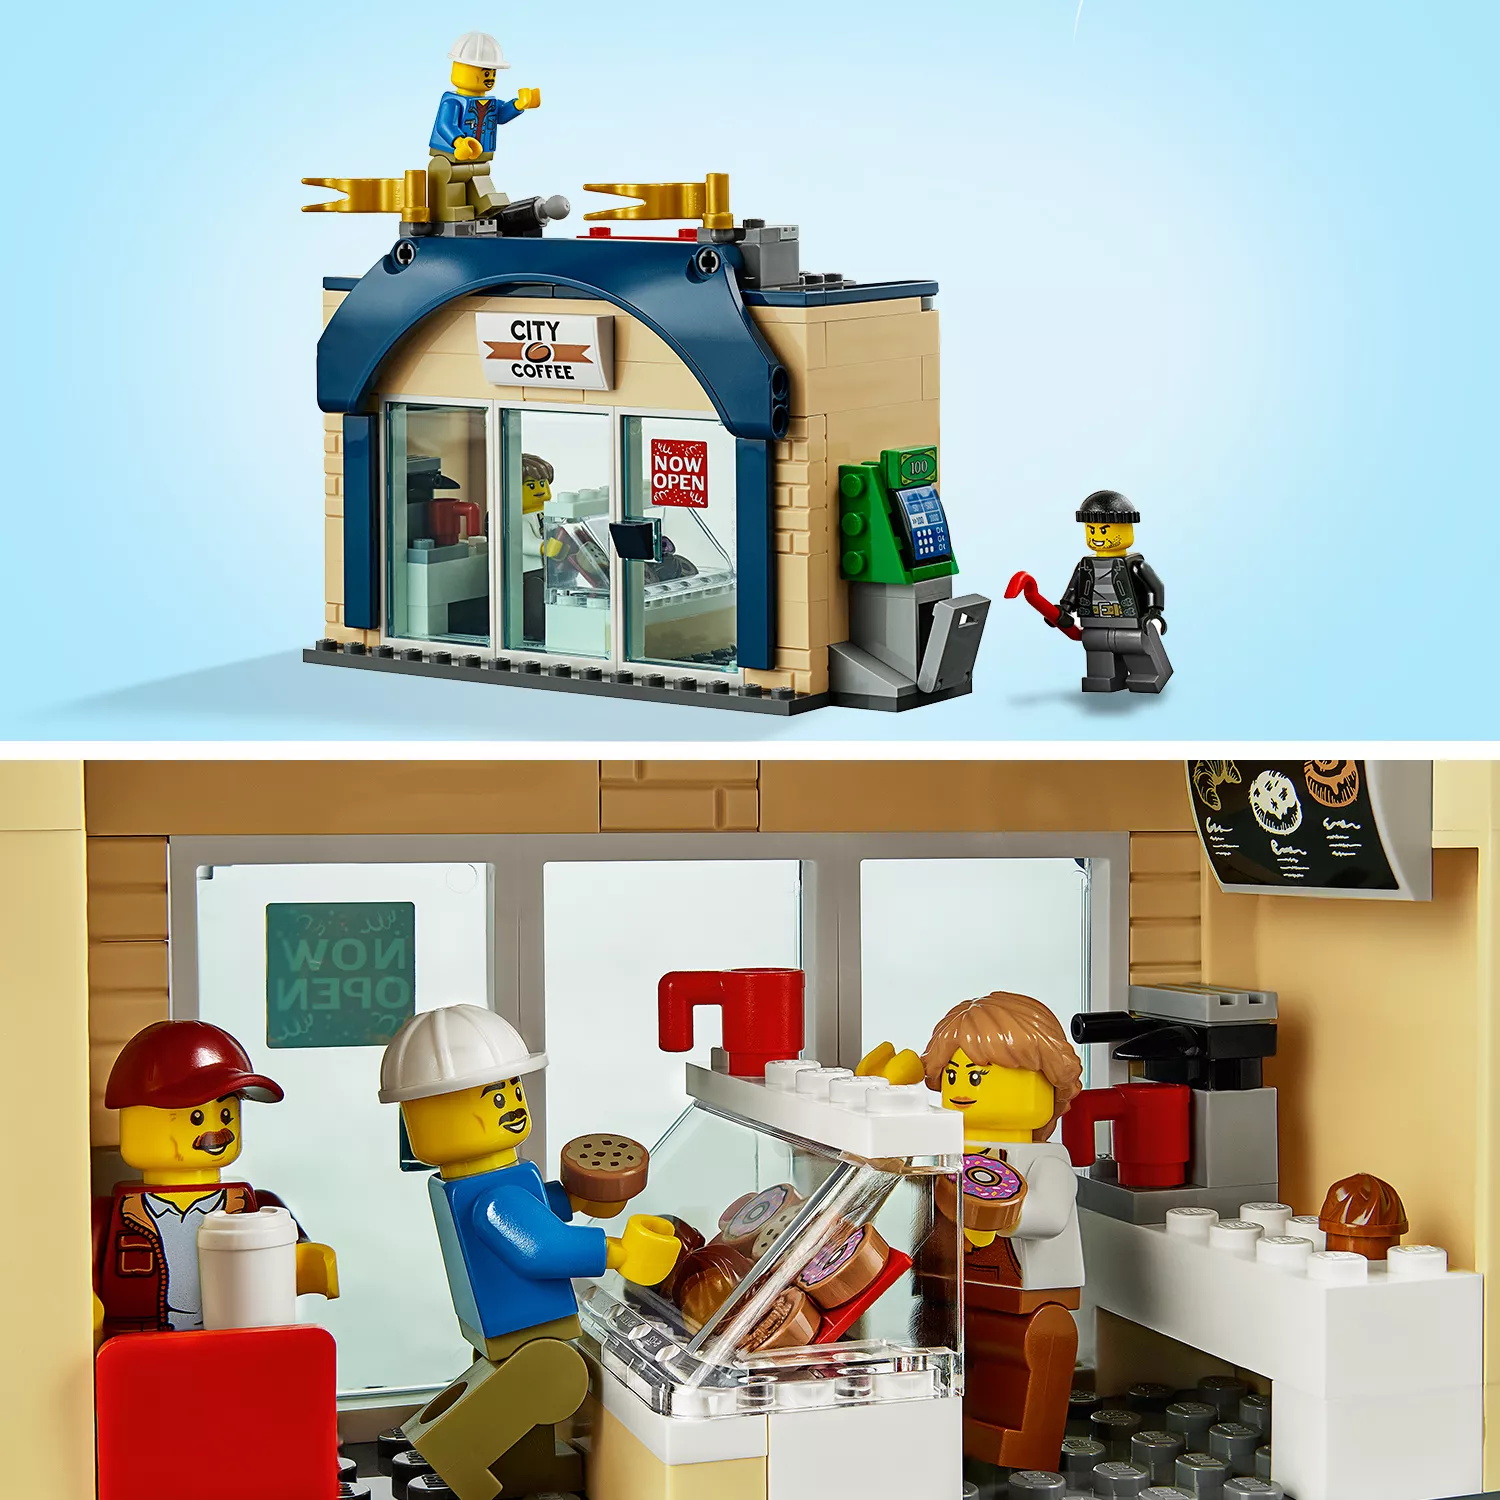 LEGO City Große Donut-Shop-Eröffnung - 60233